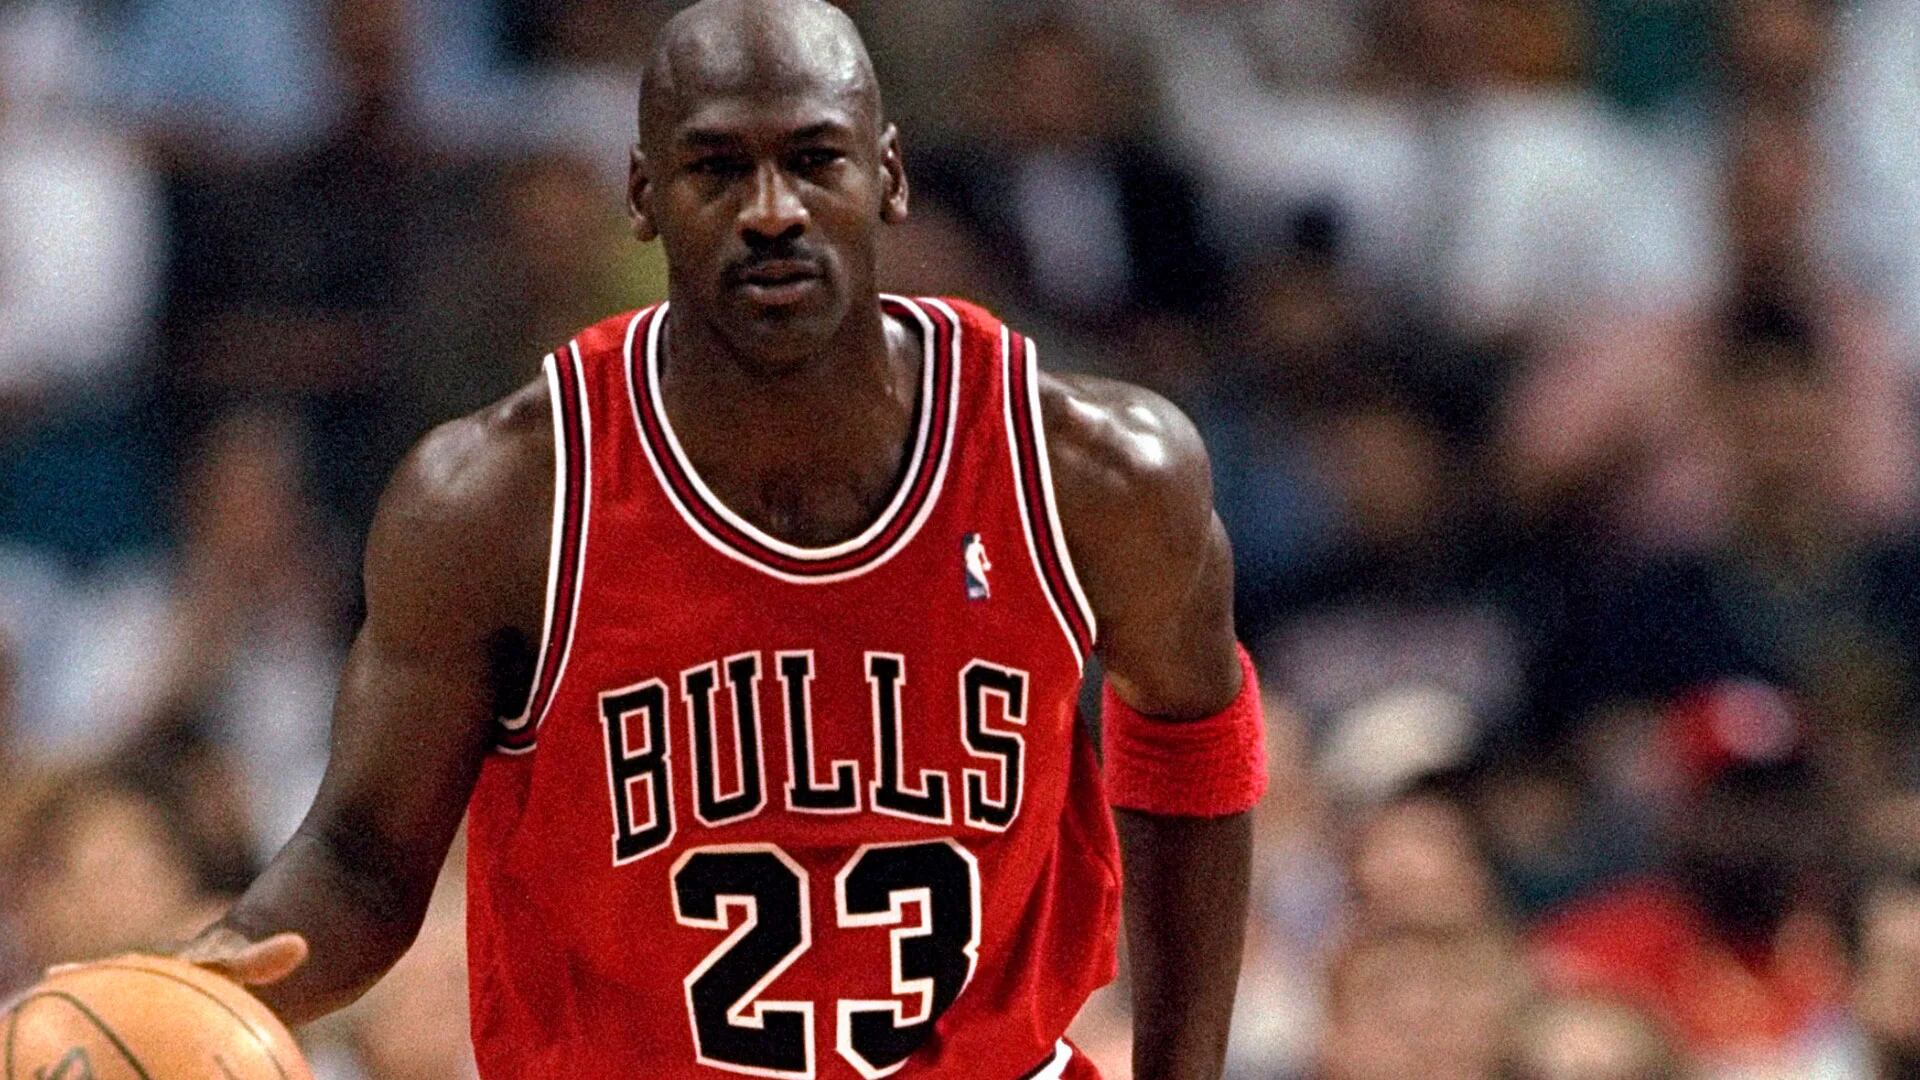 Zapatillas de Michael Jordan fueron subastadas en 2,2 millones de dólares